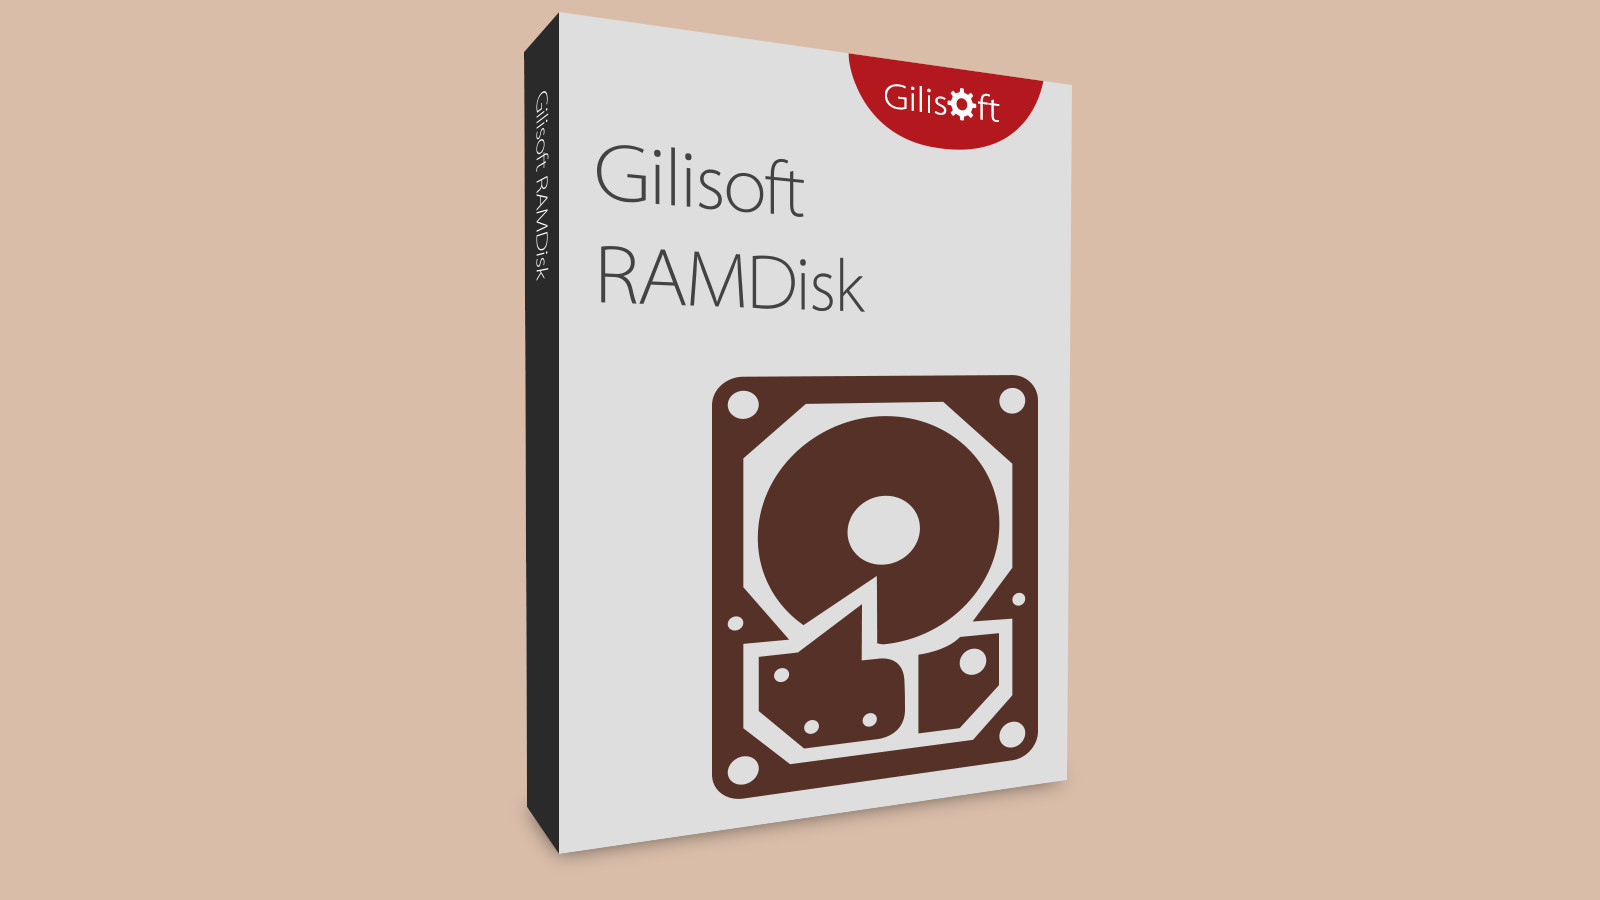 Gilisoft RAMDisk CD Key, 15.54 usd